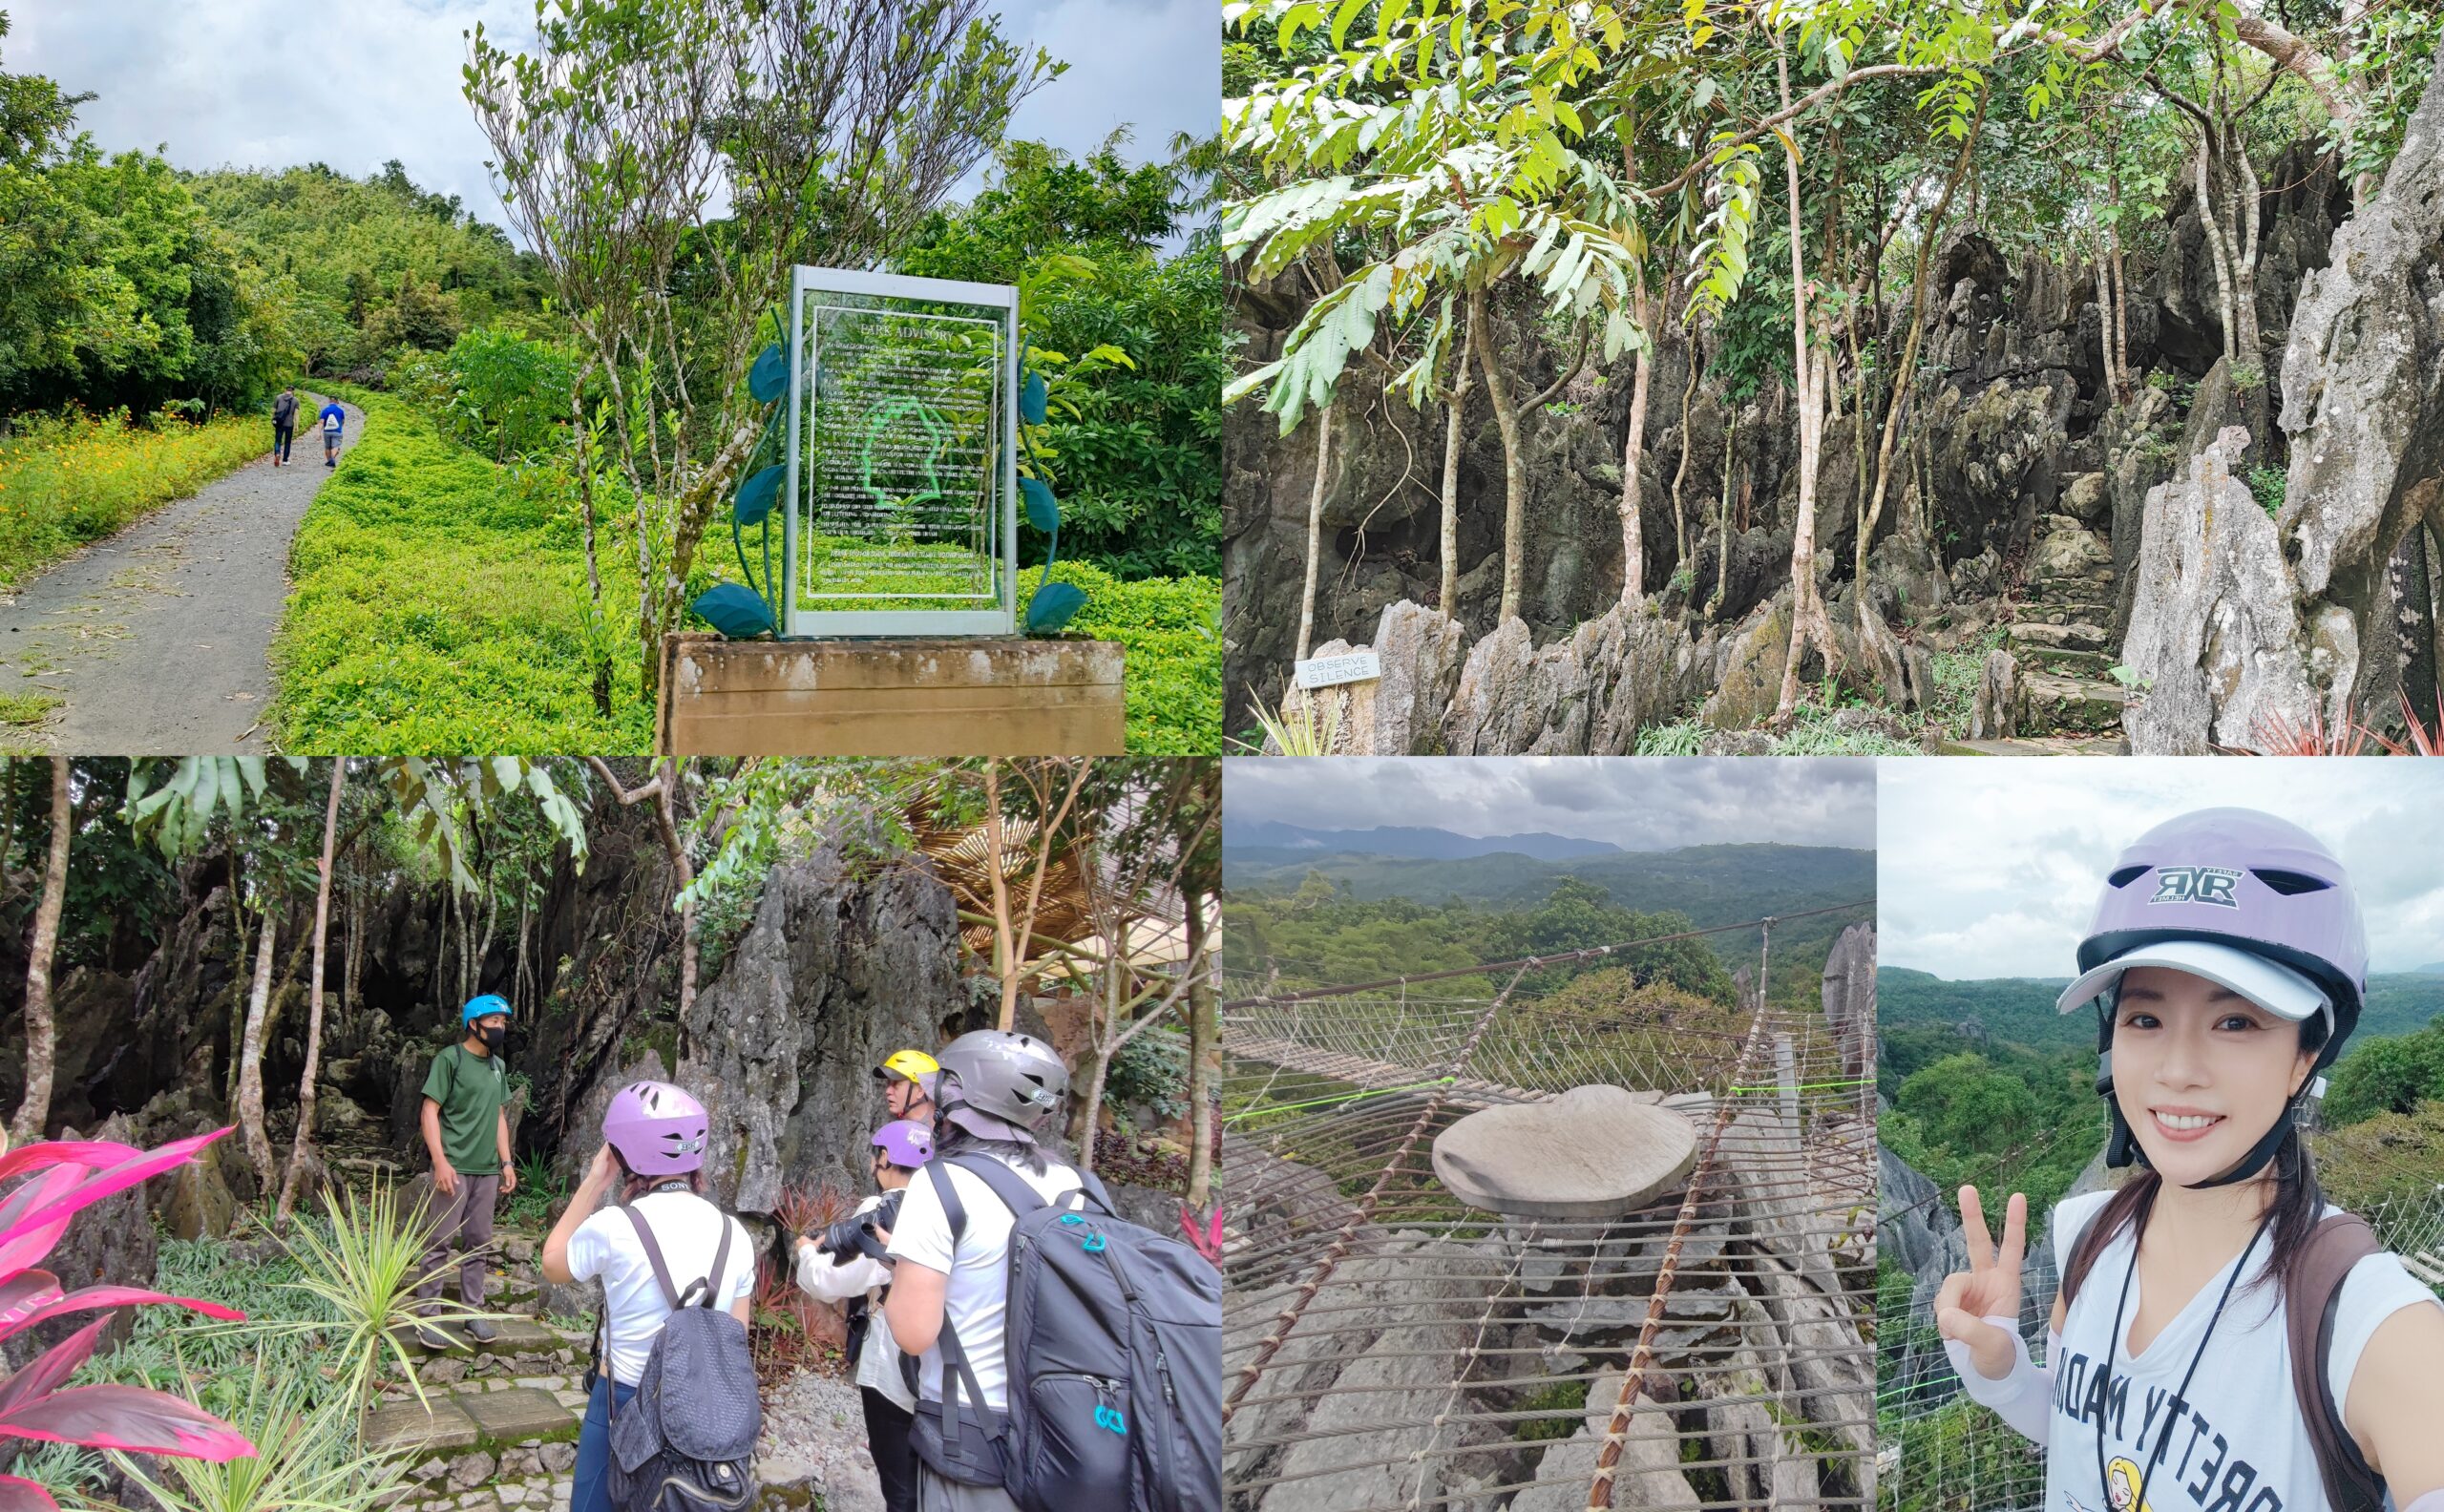 Masungi Georeserve,健行保護區,地質公園,菲律賓,馬尼拉,馬蘇尼自然野生動物保護區